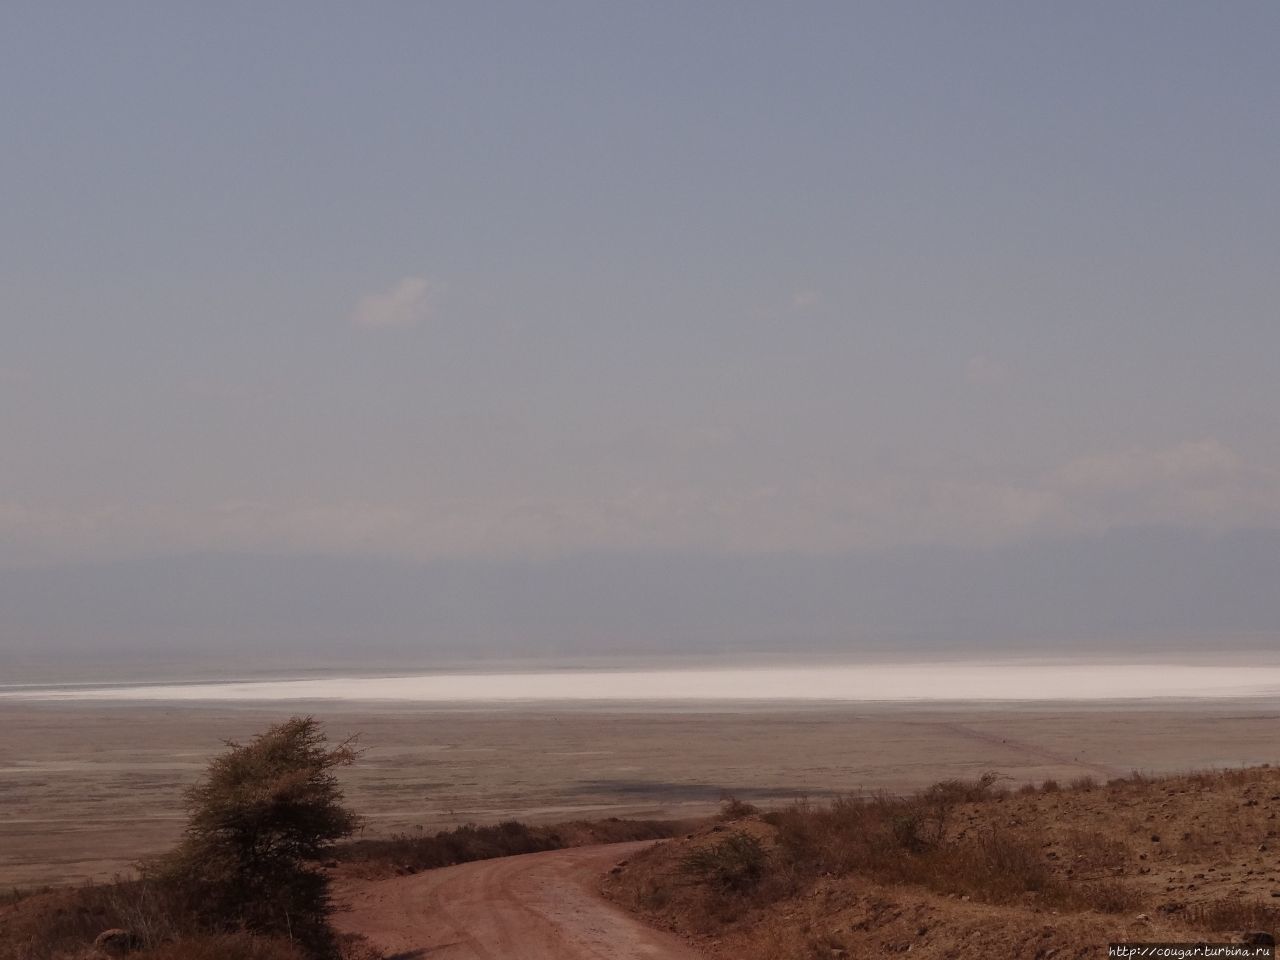 Озеро Магади оказалось пересохшим, так что поехали к родникам. Нгоронгоро (заповедник в кратере вулкана), Танзания